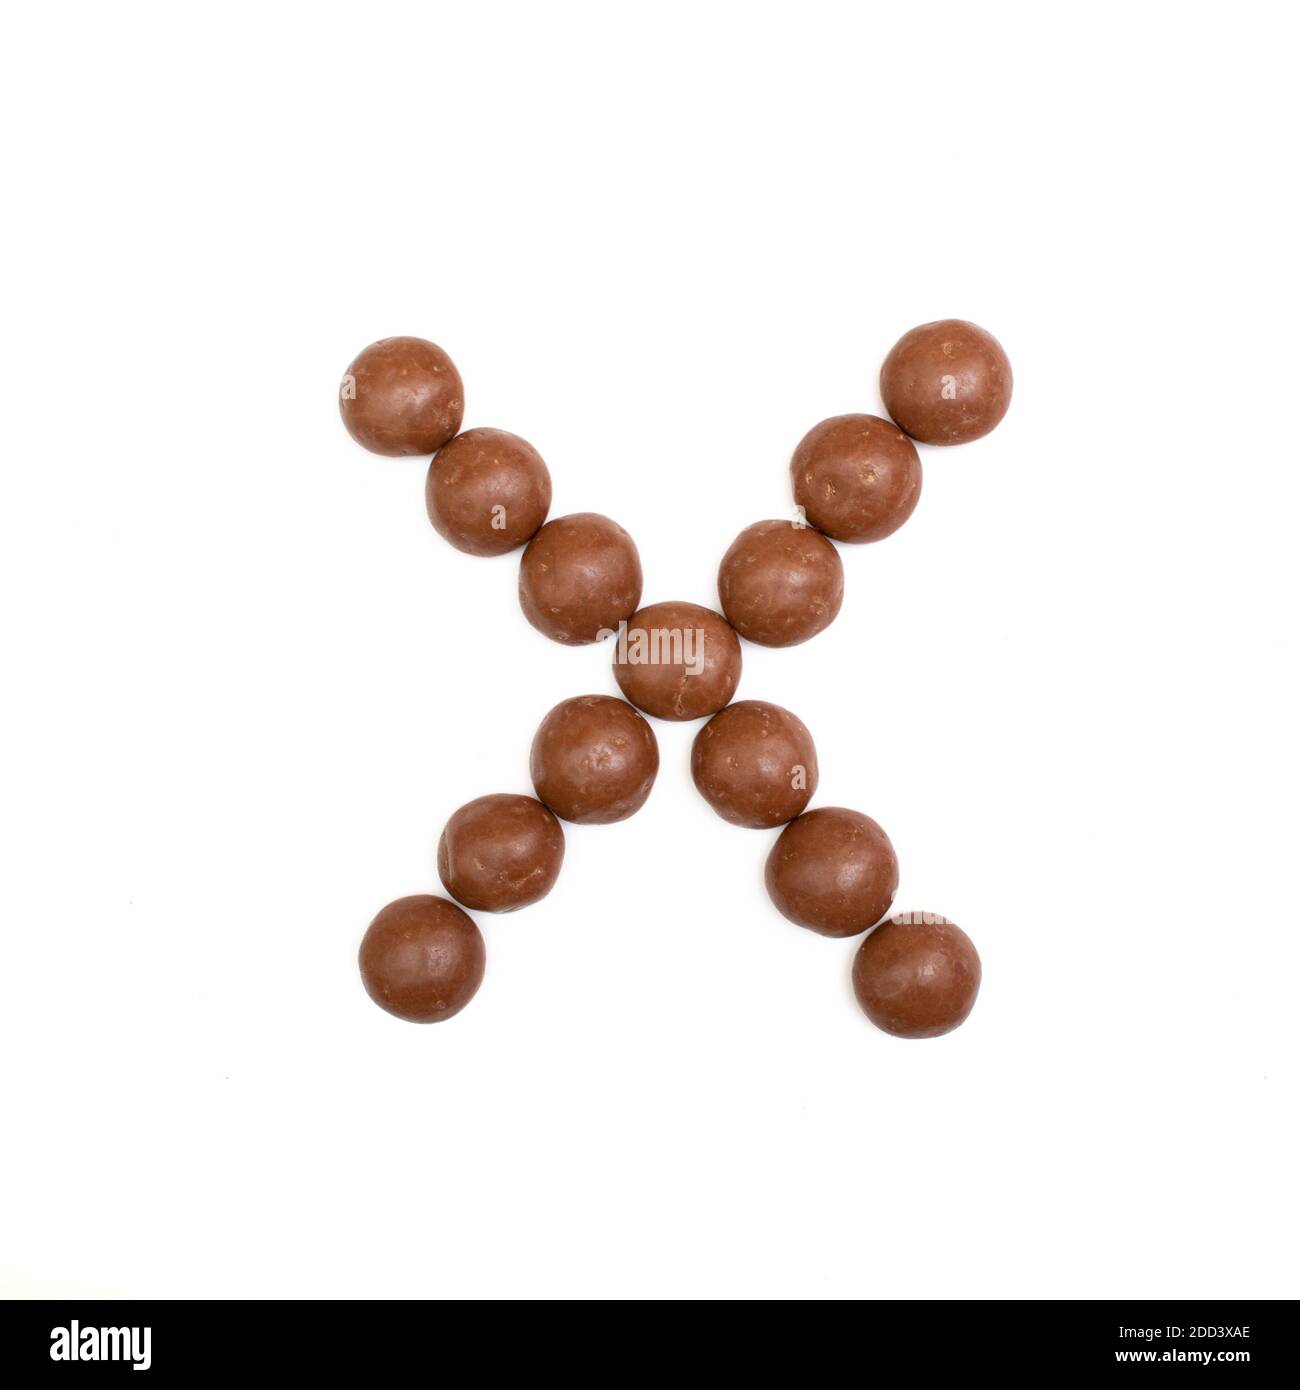 La letra 'X' escrita en chocolate marrón Pepernoten, un dulce tradicional holandés para la fiesta Sinterklaas el 5 de diciembre Foto de stock